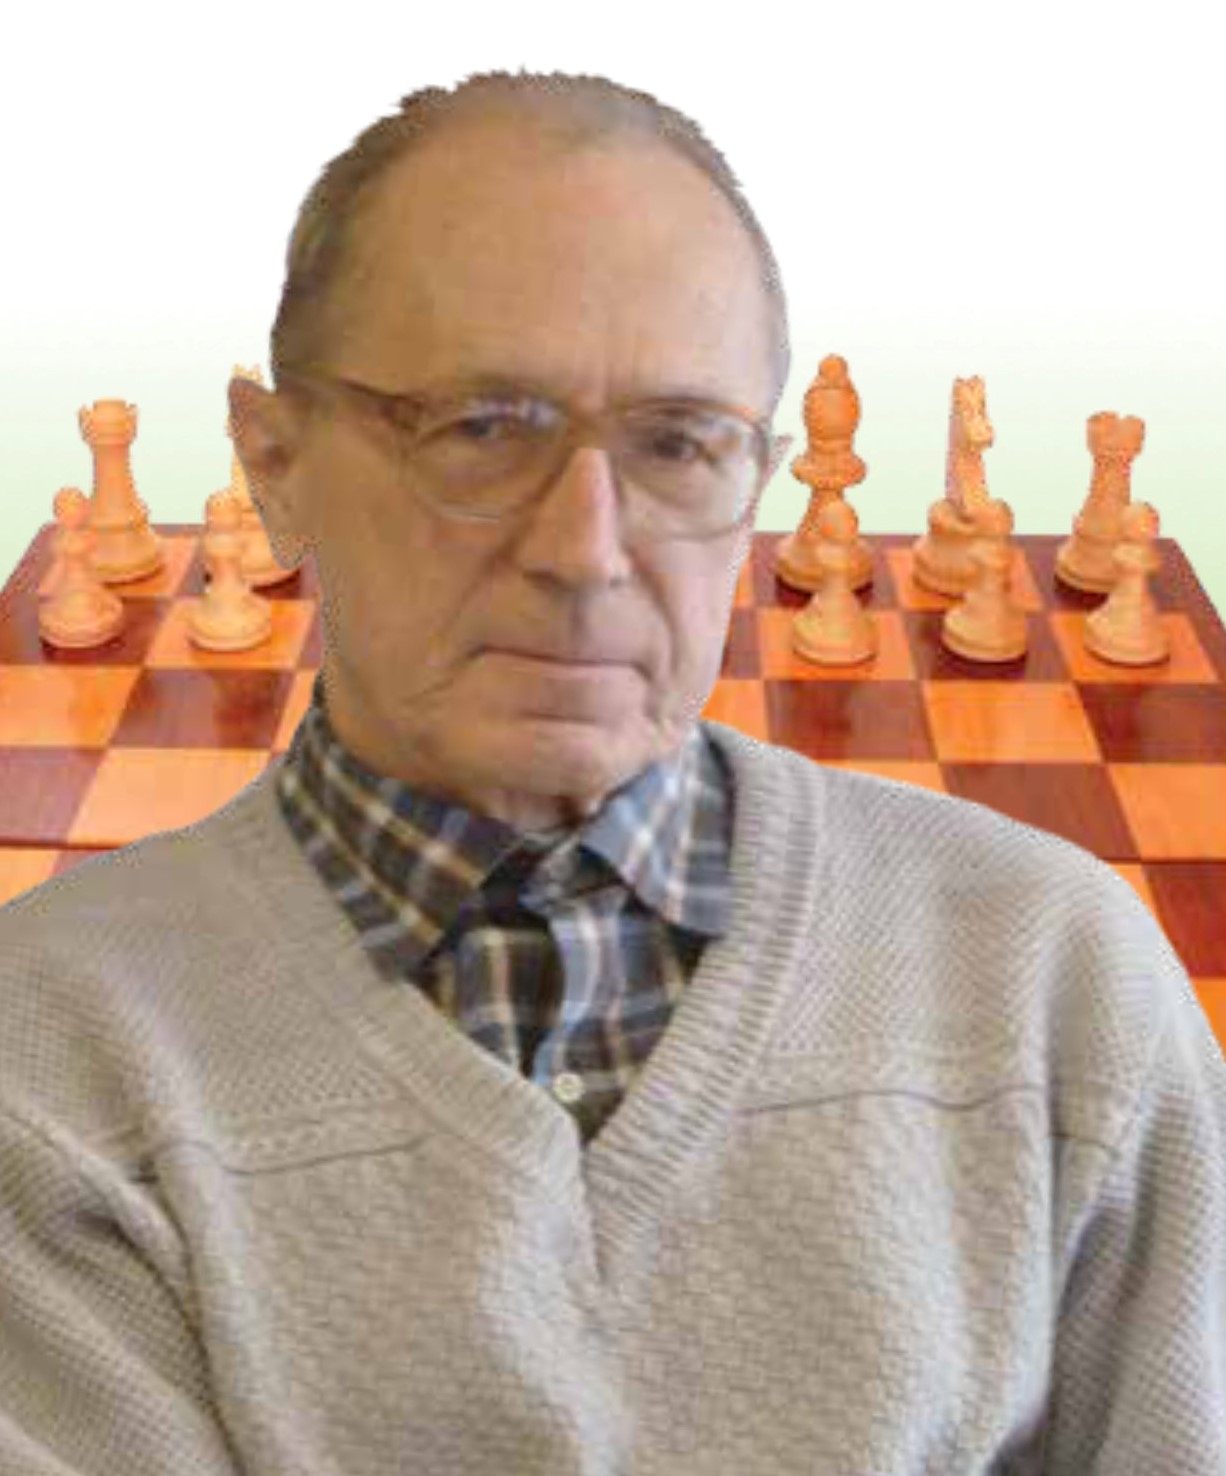 Zdjęcie mężczyzny przy szachownicy